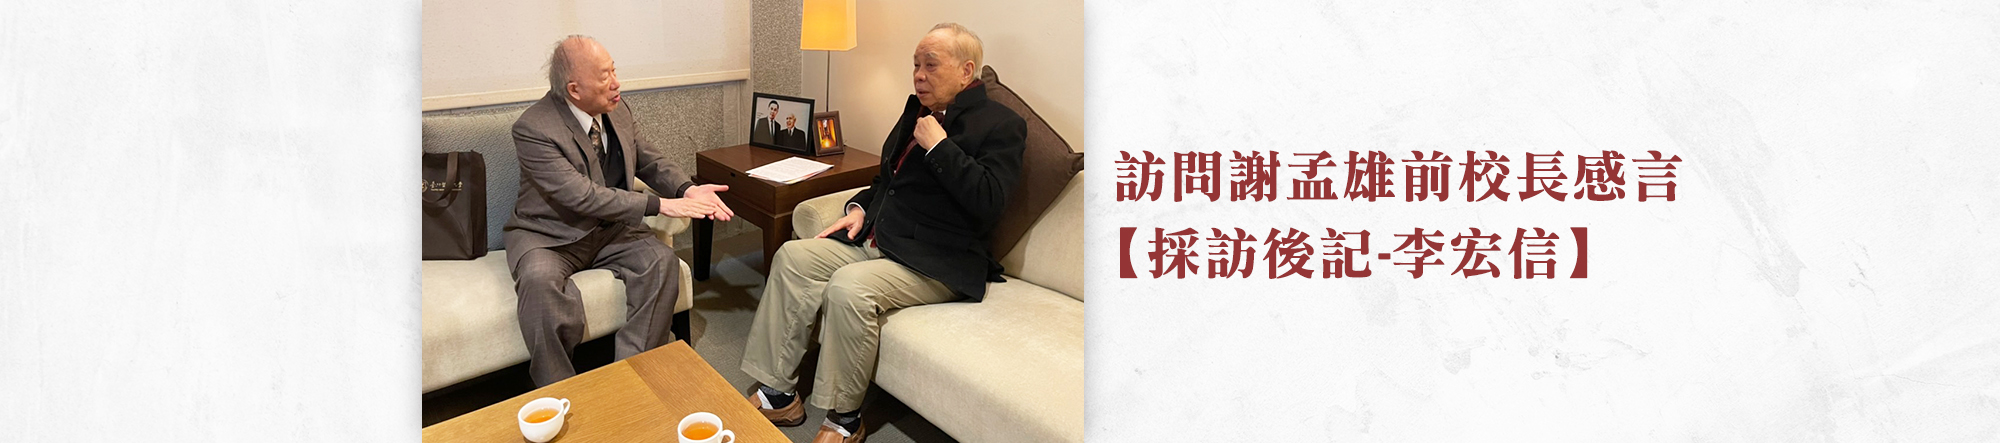 【採訪後記-李宏信】訪問謝孟雄前校長感言